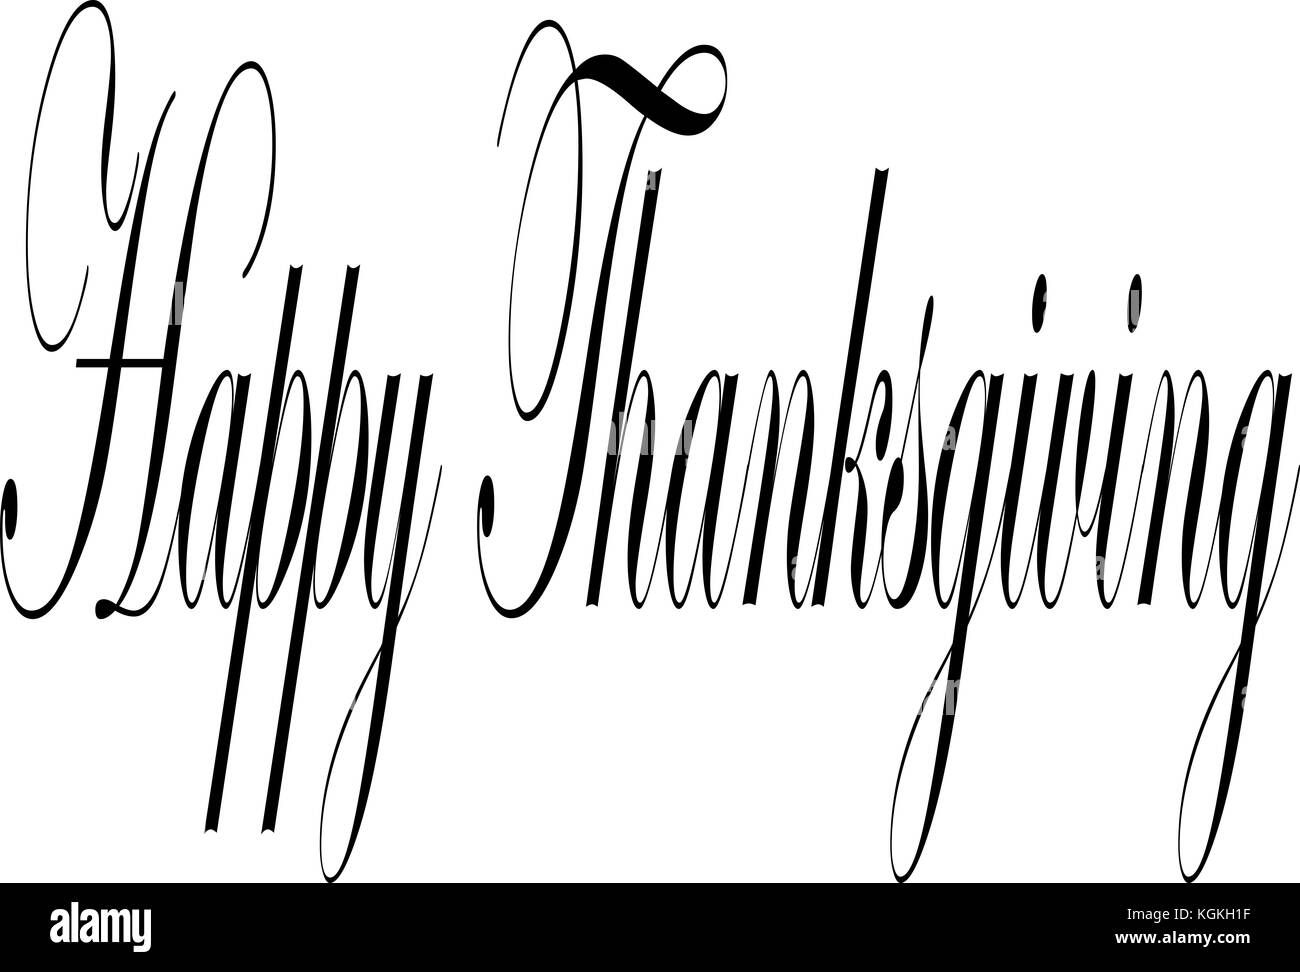 Happy Thanksgiving Text zeichen Abbildung auf weißen Abbildung. Stockfoto